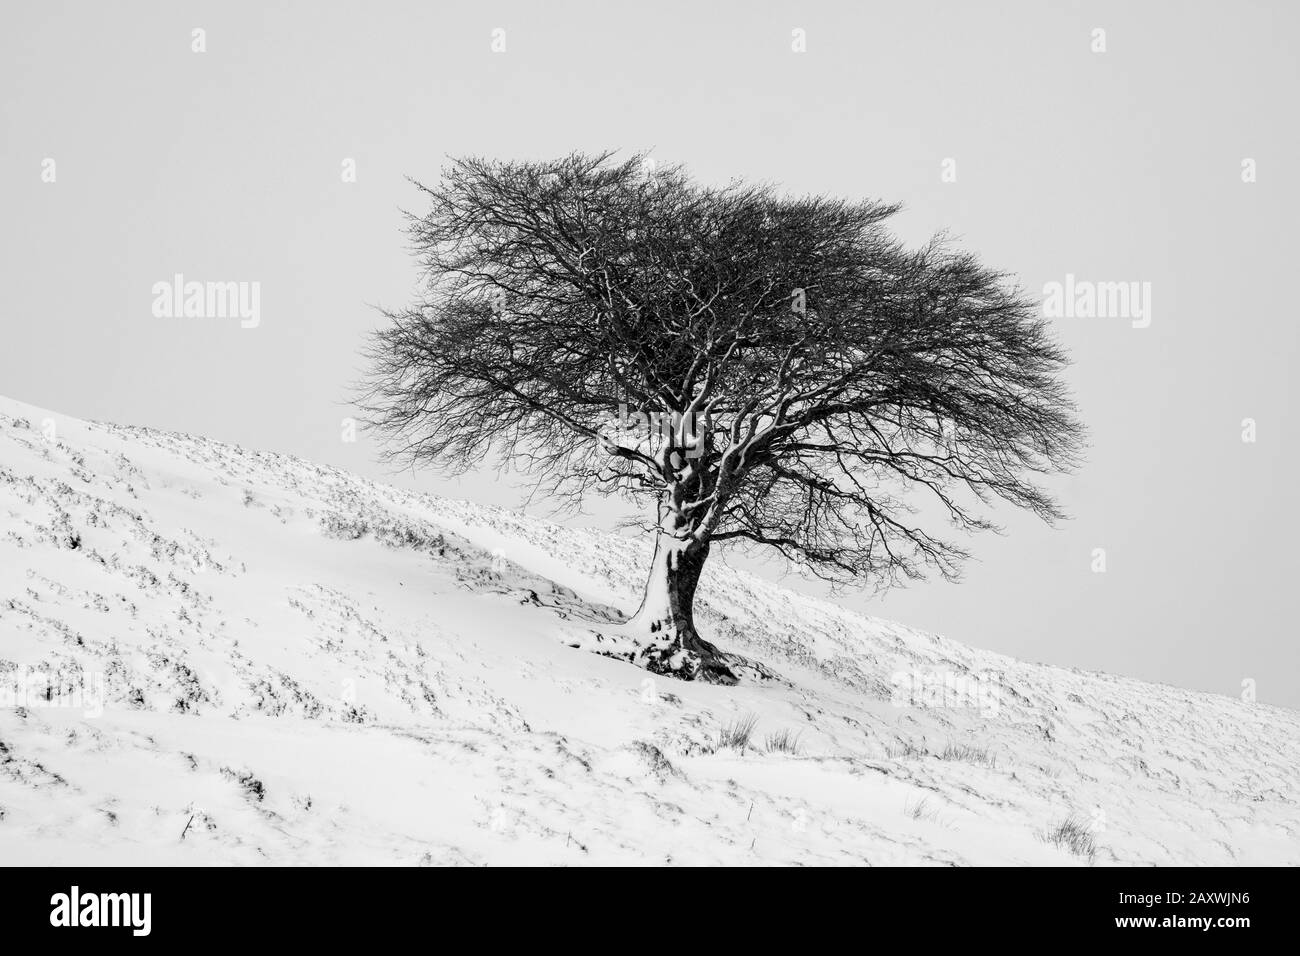 Un arbre isolé sur une colline après une chute de neige, Leadhills, South Lanarkshire, Écosse. Banque D'Images